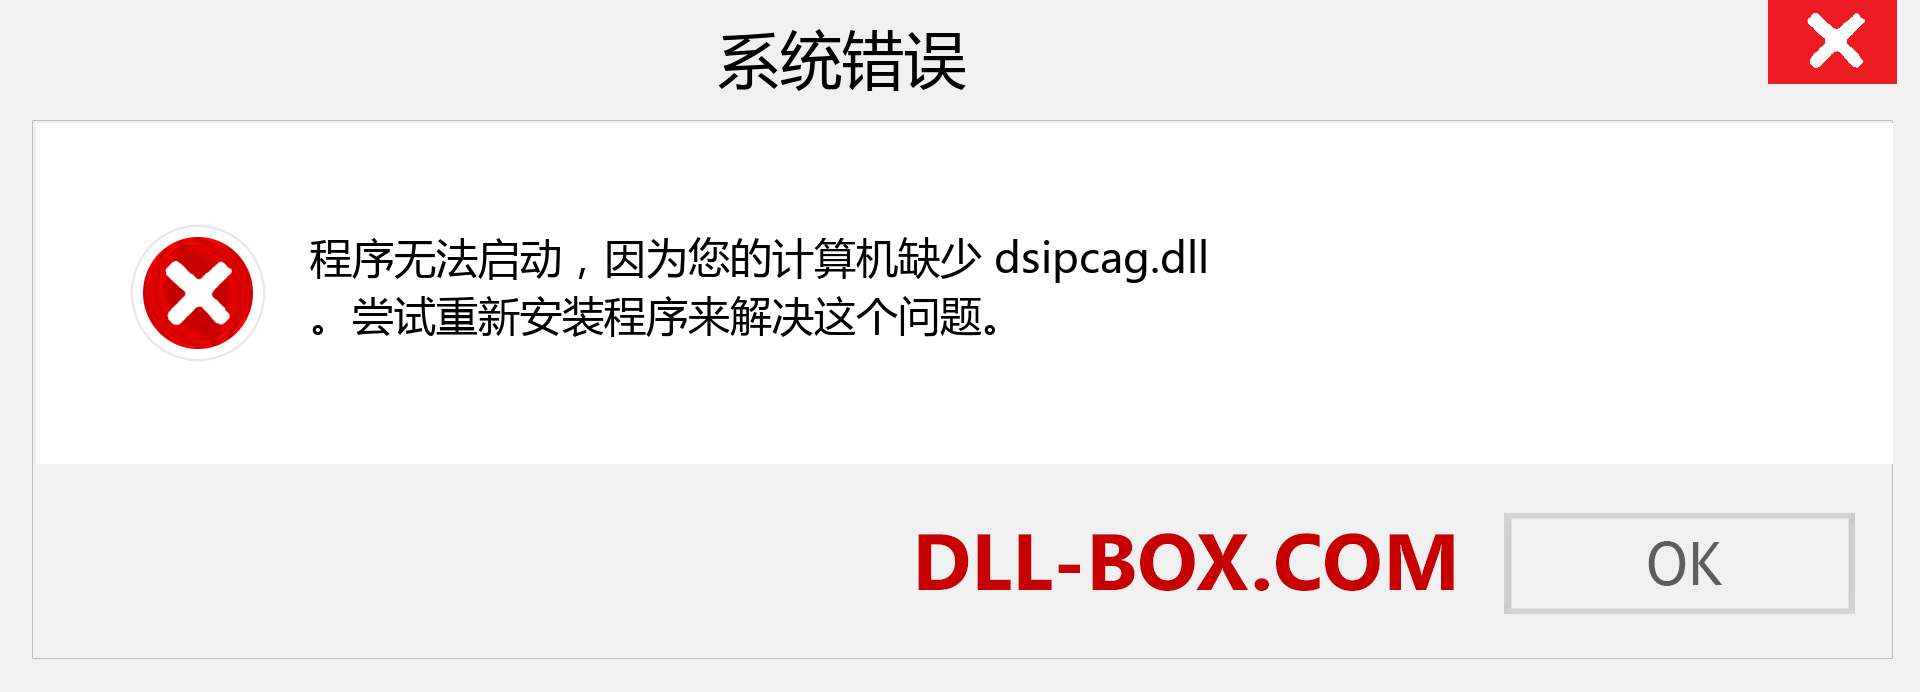 dsipcag.dll 文件丢失？。 适用于 Windows 7、8、10 的下载 - 修复 Windows、照片、图像上的 dsipcag dll 丢失错误